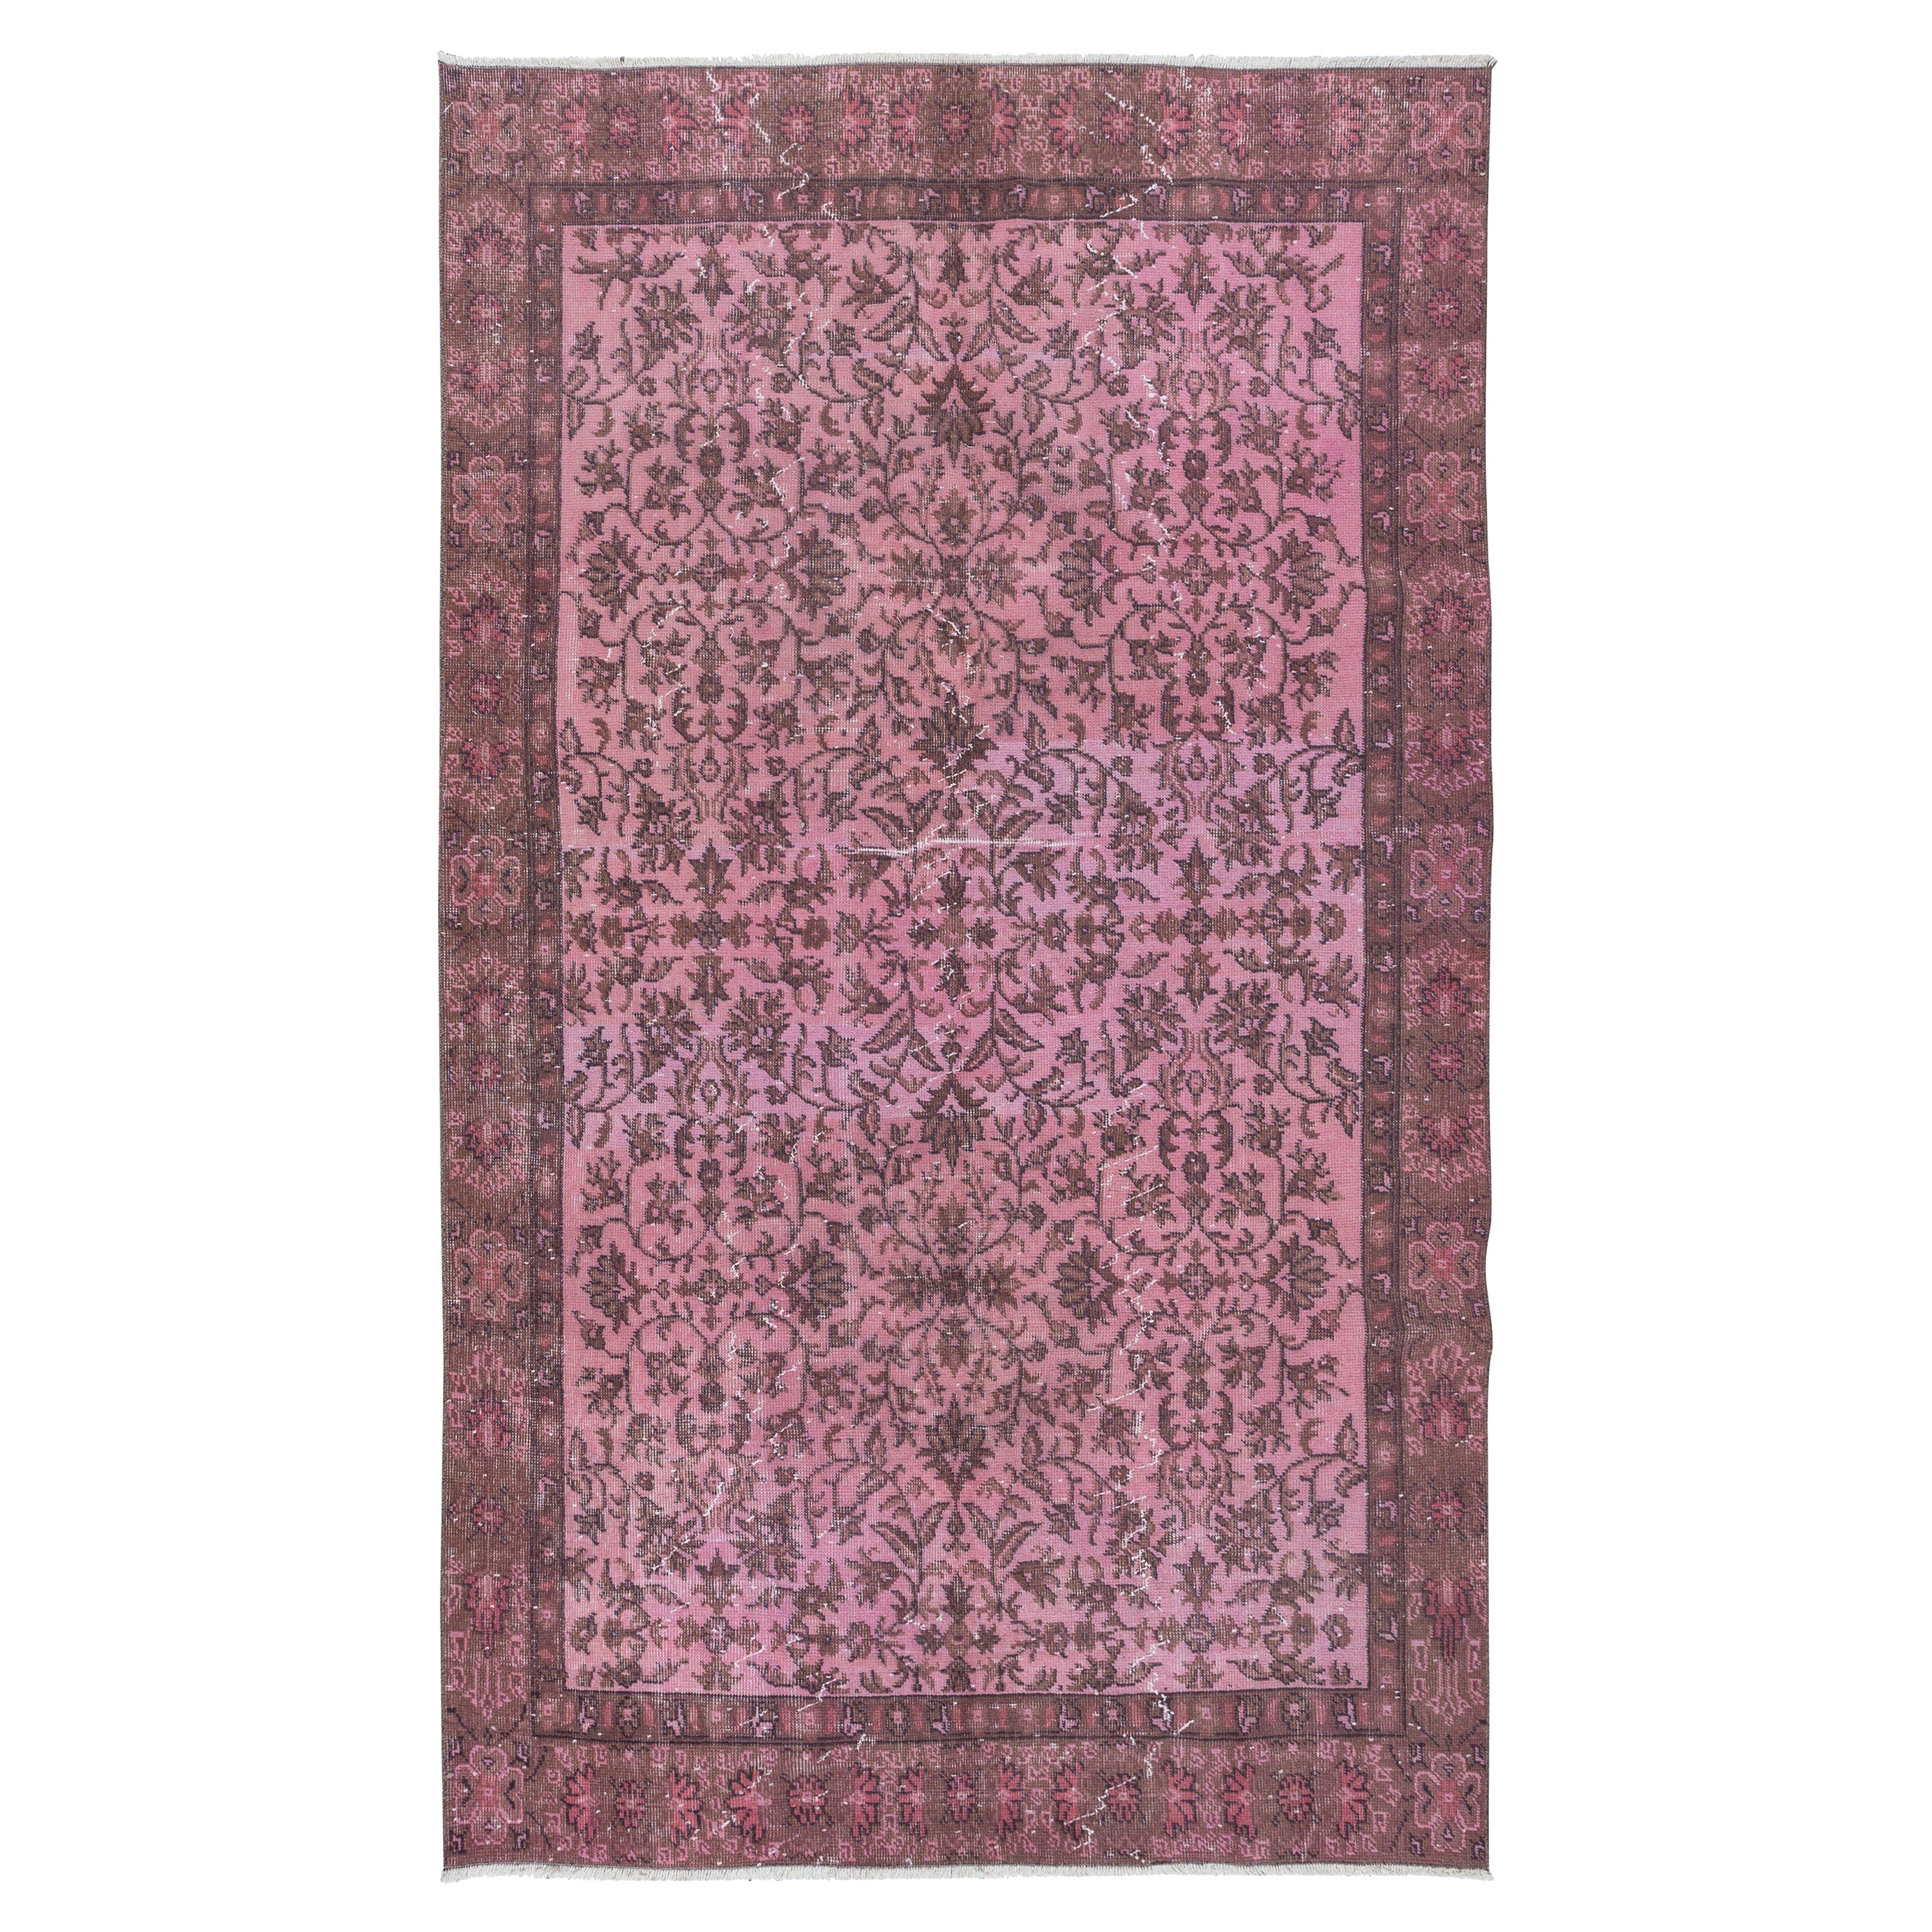 5x8.6 Ft Rose Pink Modern Turkish Area Rug. Handmade Flower Design Carpet For Sale